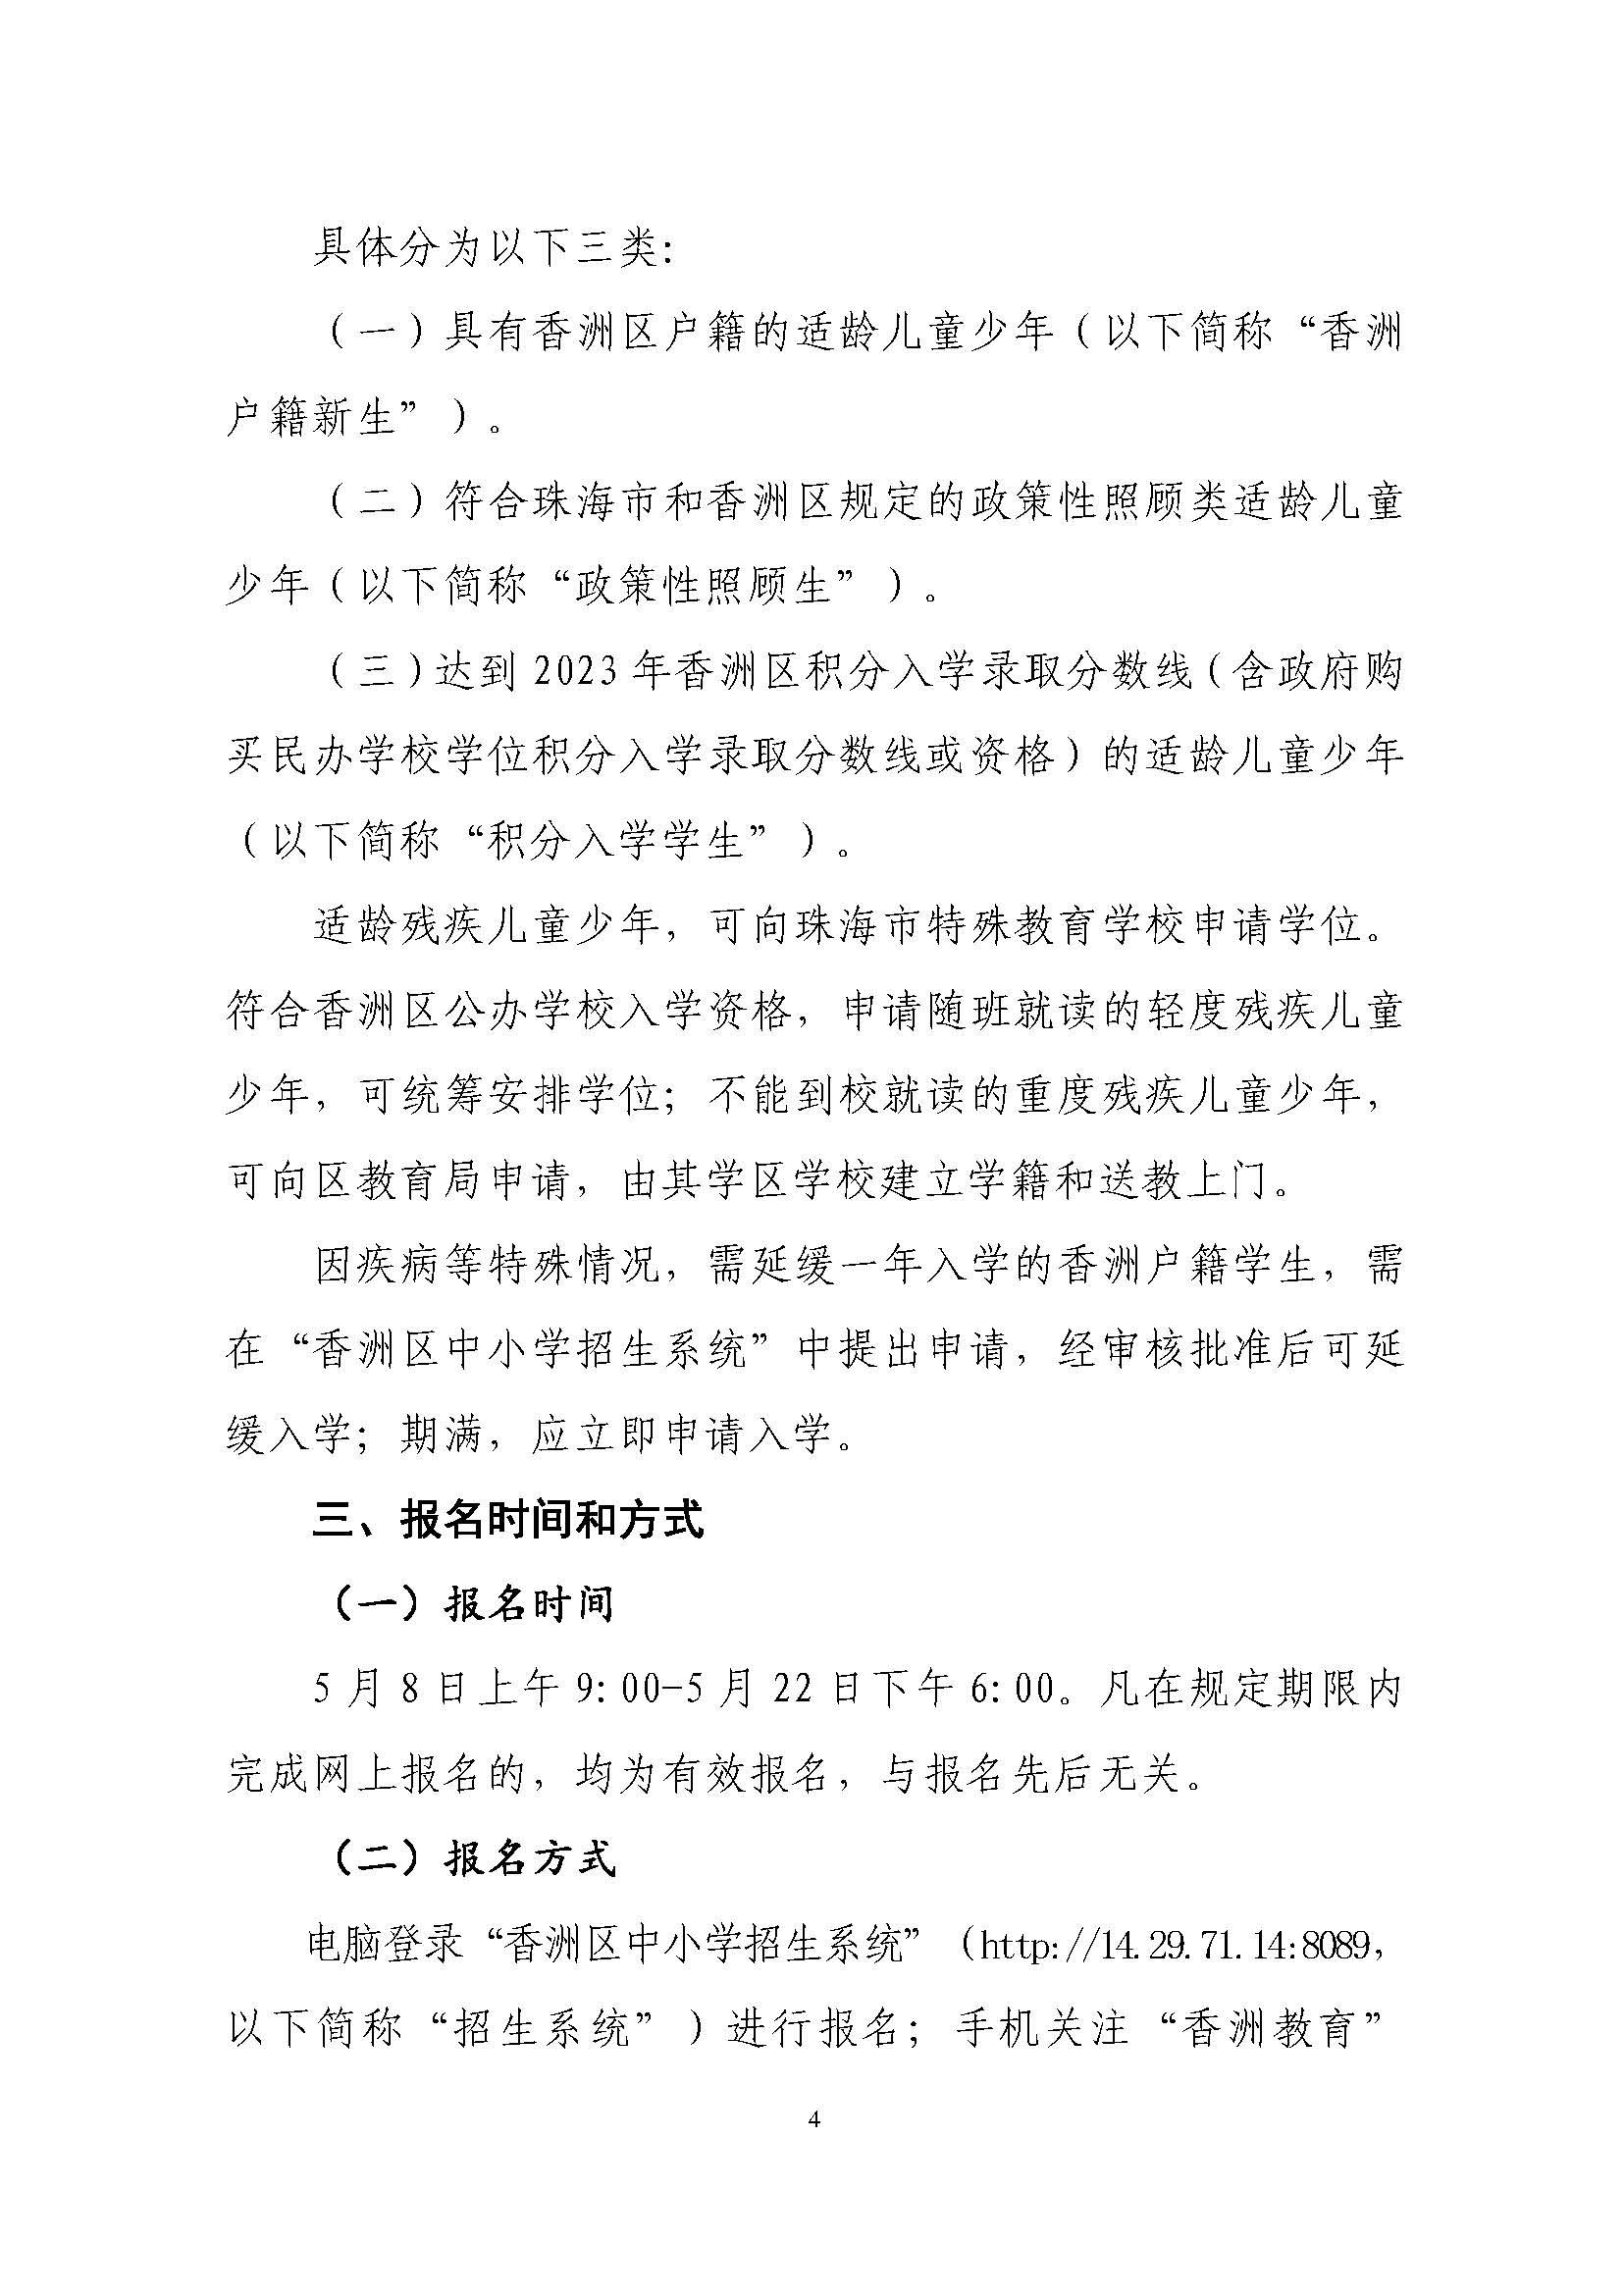 關于印發2023年秋季香洲區中小學招生工作實施細則的通知（定稿）_頁面_05.jpg